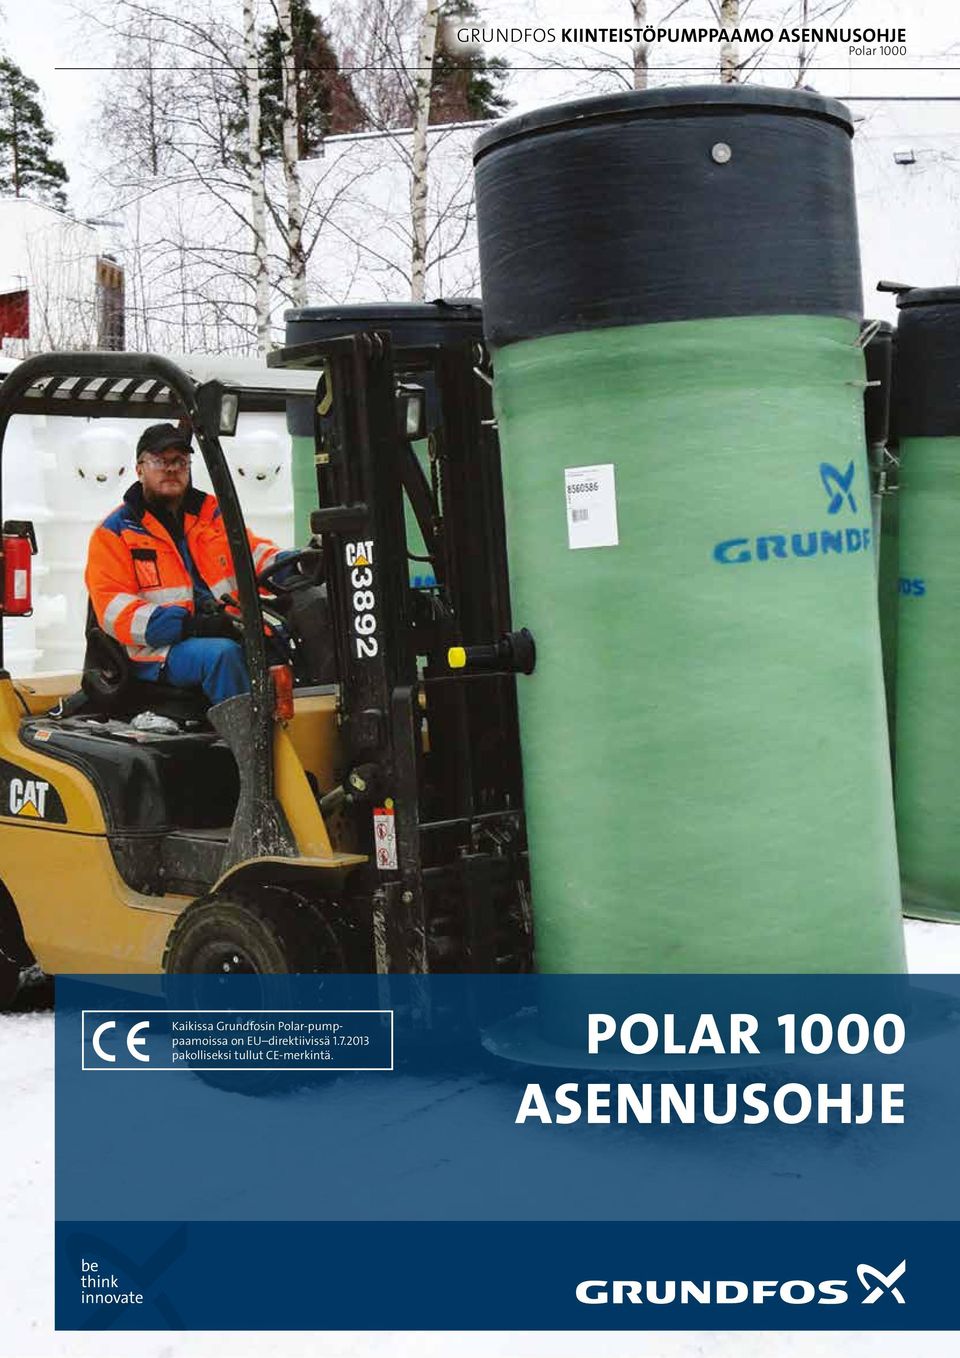 Kaikissa Grundfosin Polar-pumppaamoissa on  Kaikissa Grundfosin Polar-pumppaamoissa on  POLAR